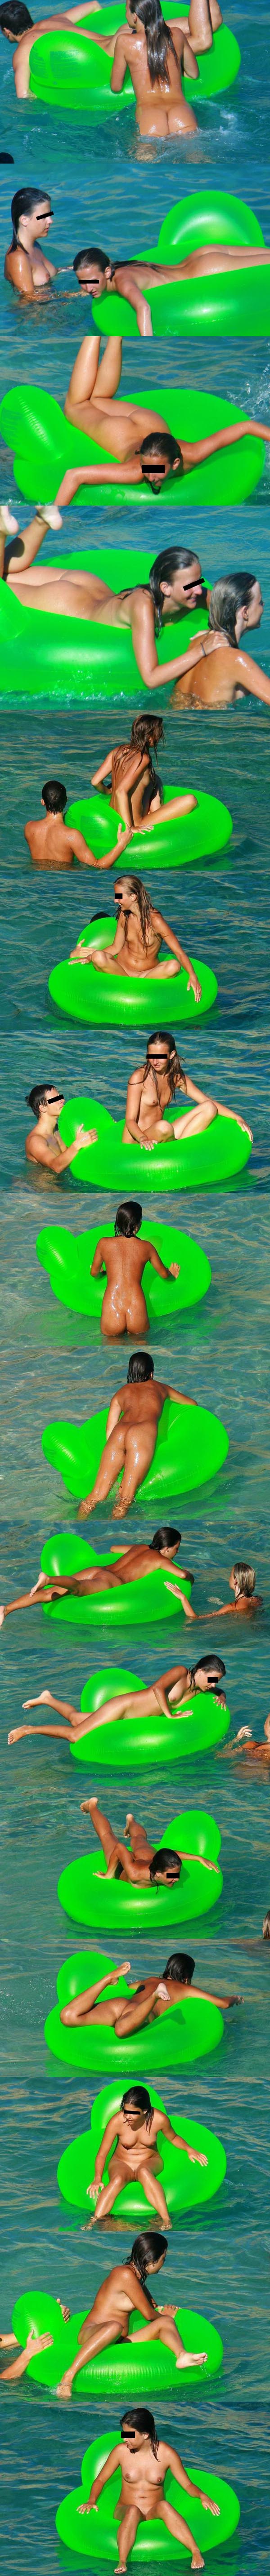 Des filles nues sur une bouee se baignent en camp naturiste. Envie de retourner en vacances ?